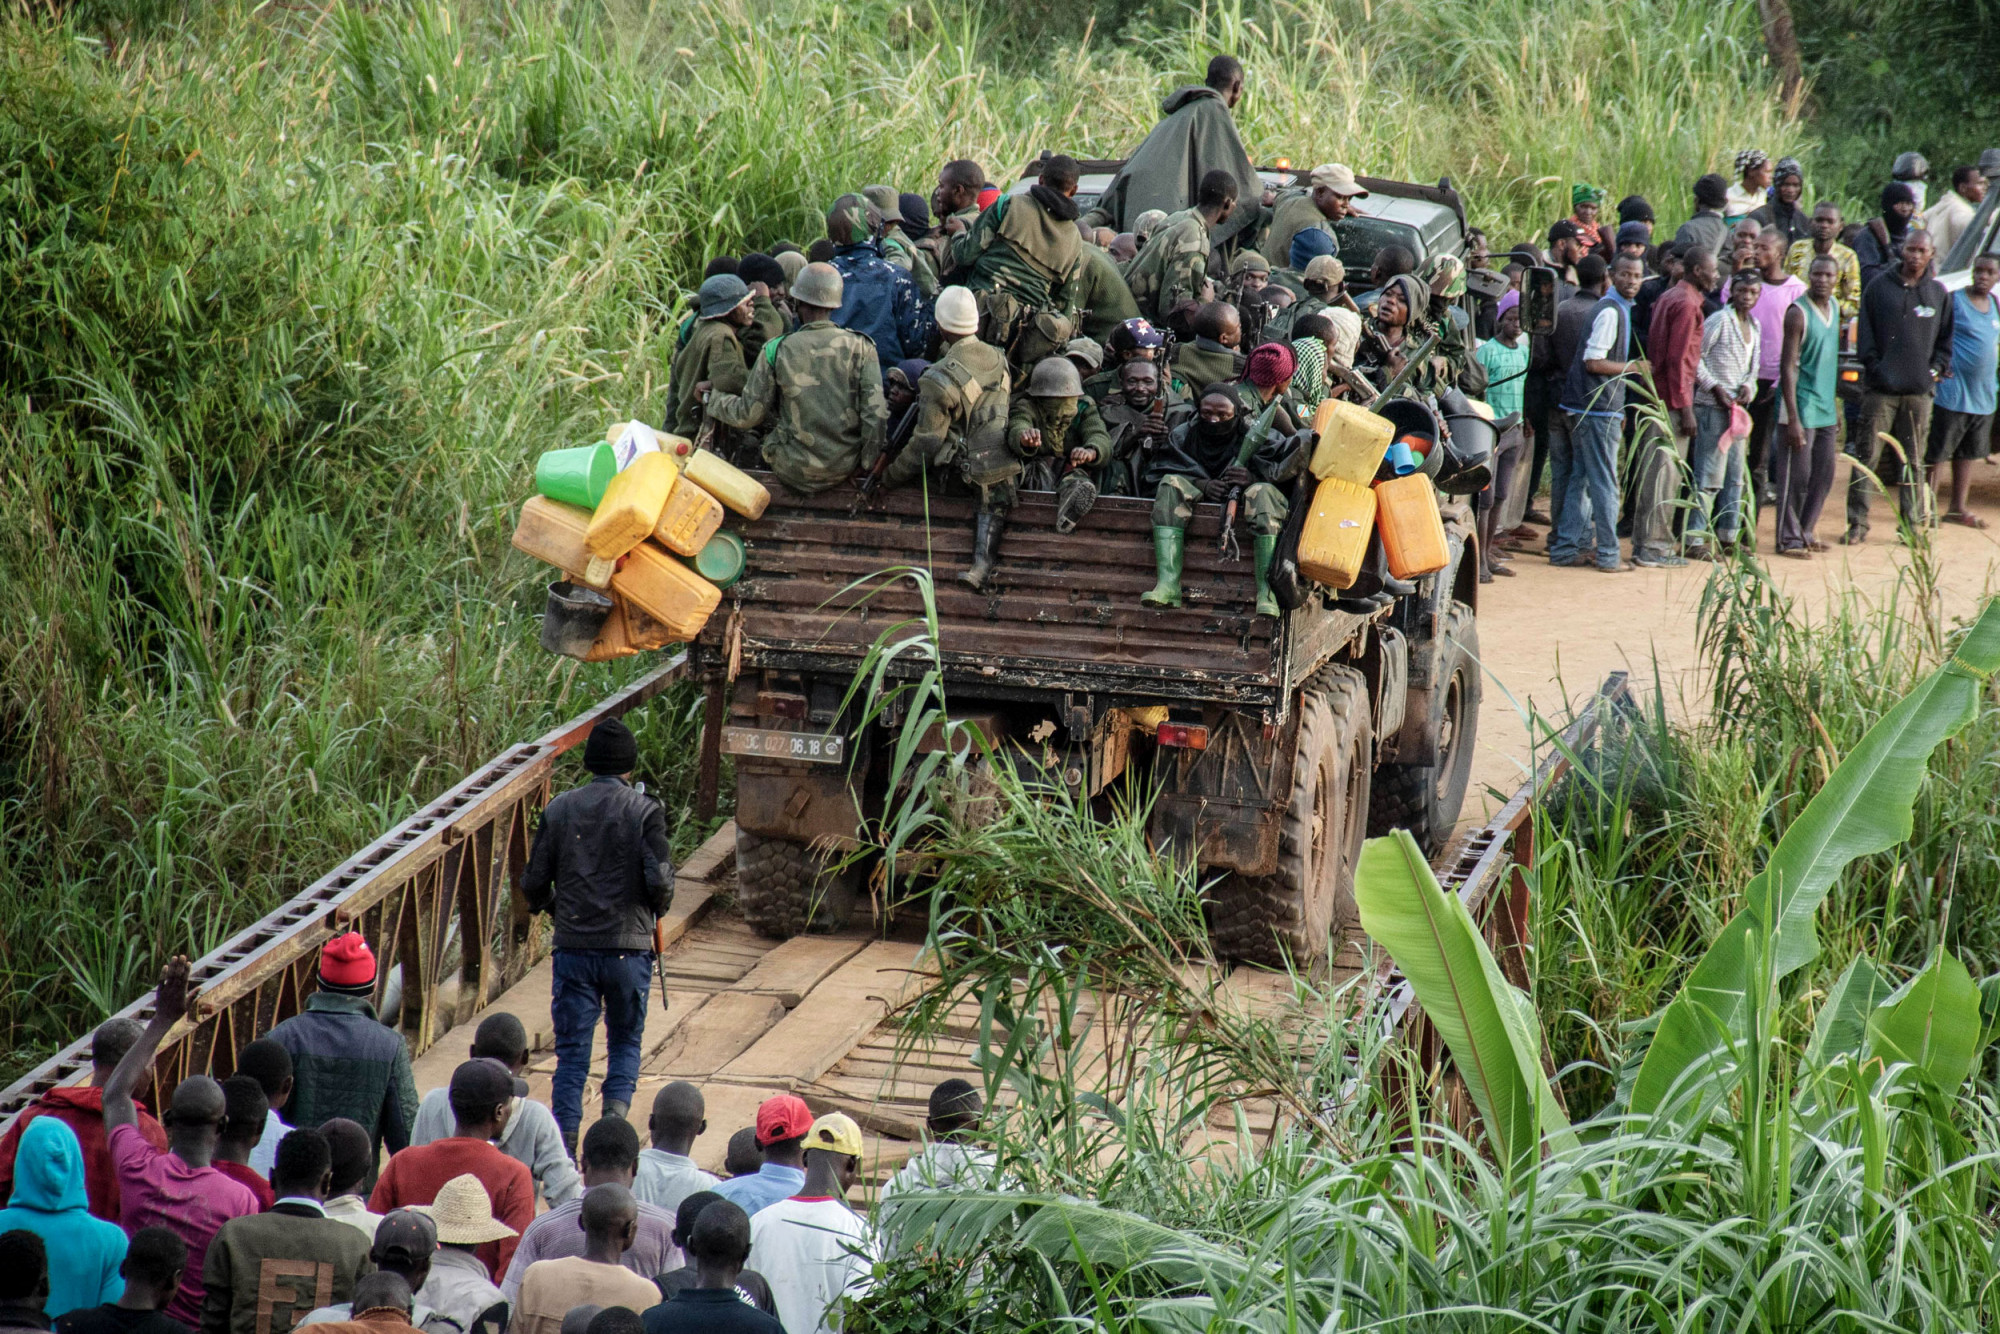 Nord-est de l’Ituri, RDC, avril 2020. À 15 km au nord de Bunia, un camion rempli de soldats gouvernementaux en route vers la ligne de front croise des villageois en fuite, lors d’affrontements avec des membres de la Coopérative pour le développement du Congo (Codeco), une secte politico-religieuse issue du groupe ethnique Lema. Des miliciens ont assassiné dans leur sommeil 22 personnes du village de Koli, toutes d’origine Hema, selon le témoignage de responsables de la ville de Djugu © Dieudonné Dirole pour la Fondation Carmignac